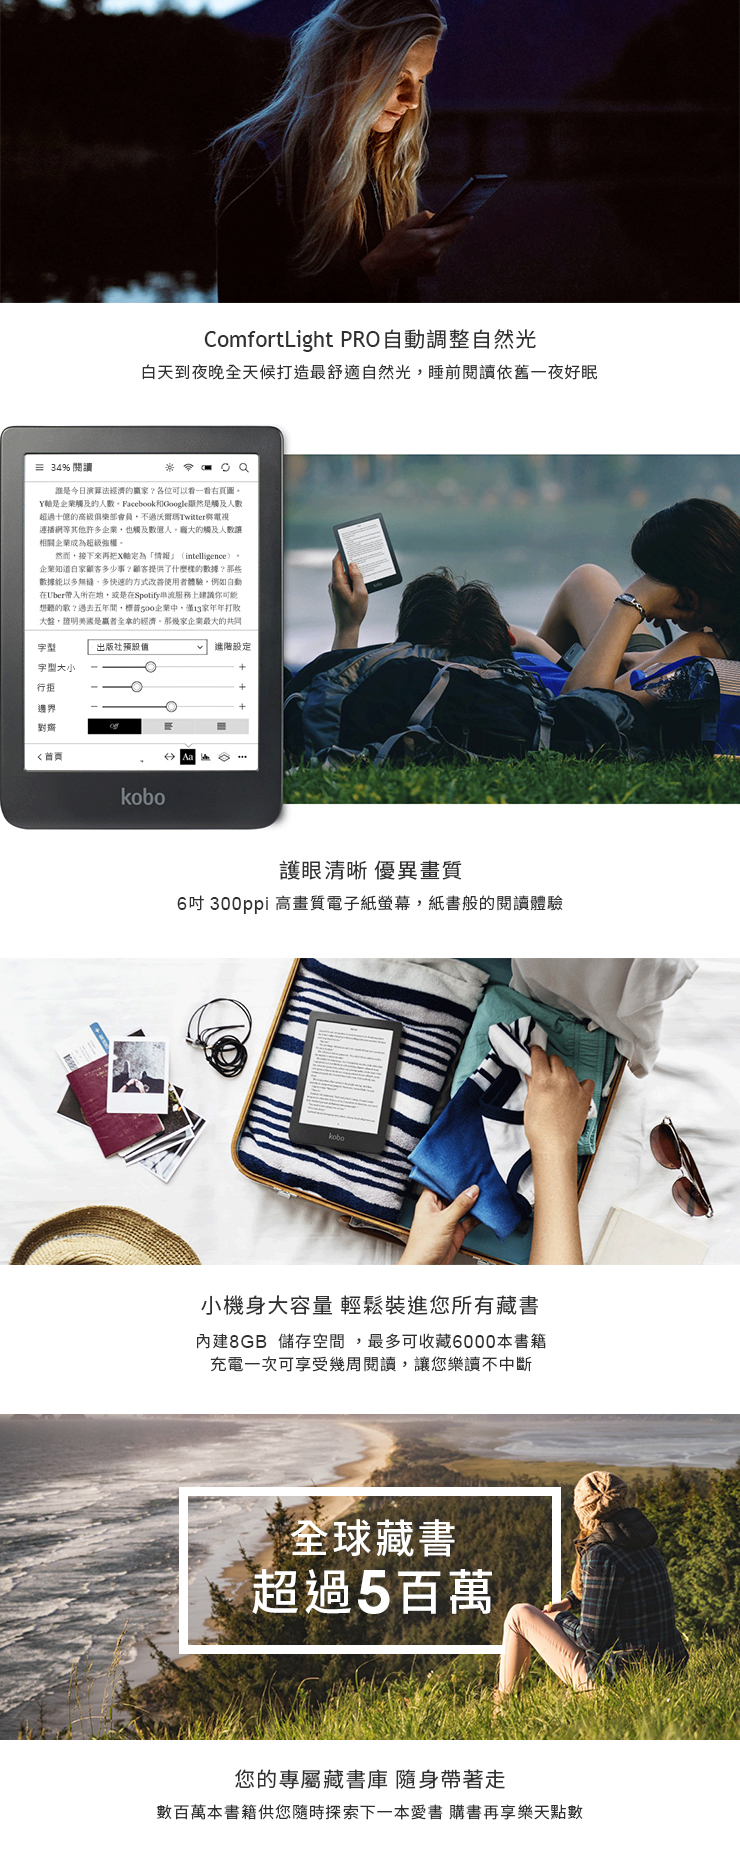 特惠品] Kobo Clara HD 6吋電子書閱讀器8GB (活動期間贈$500購書金